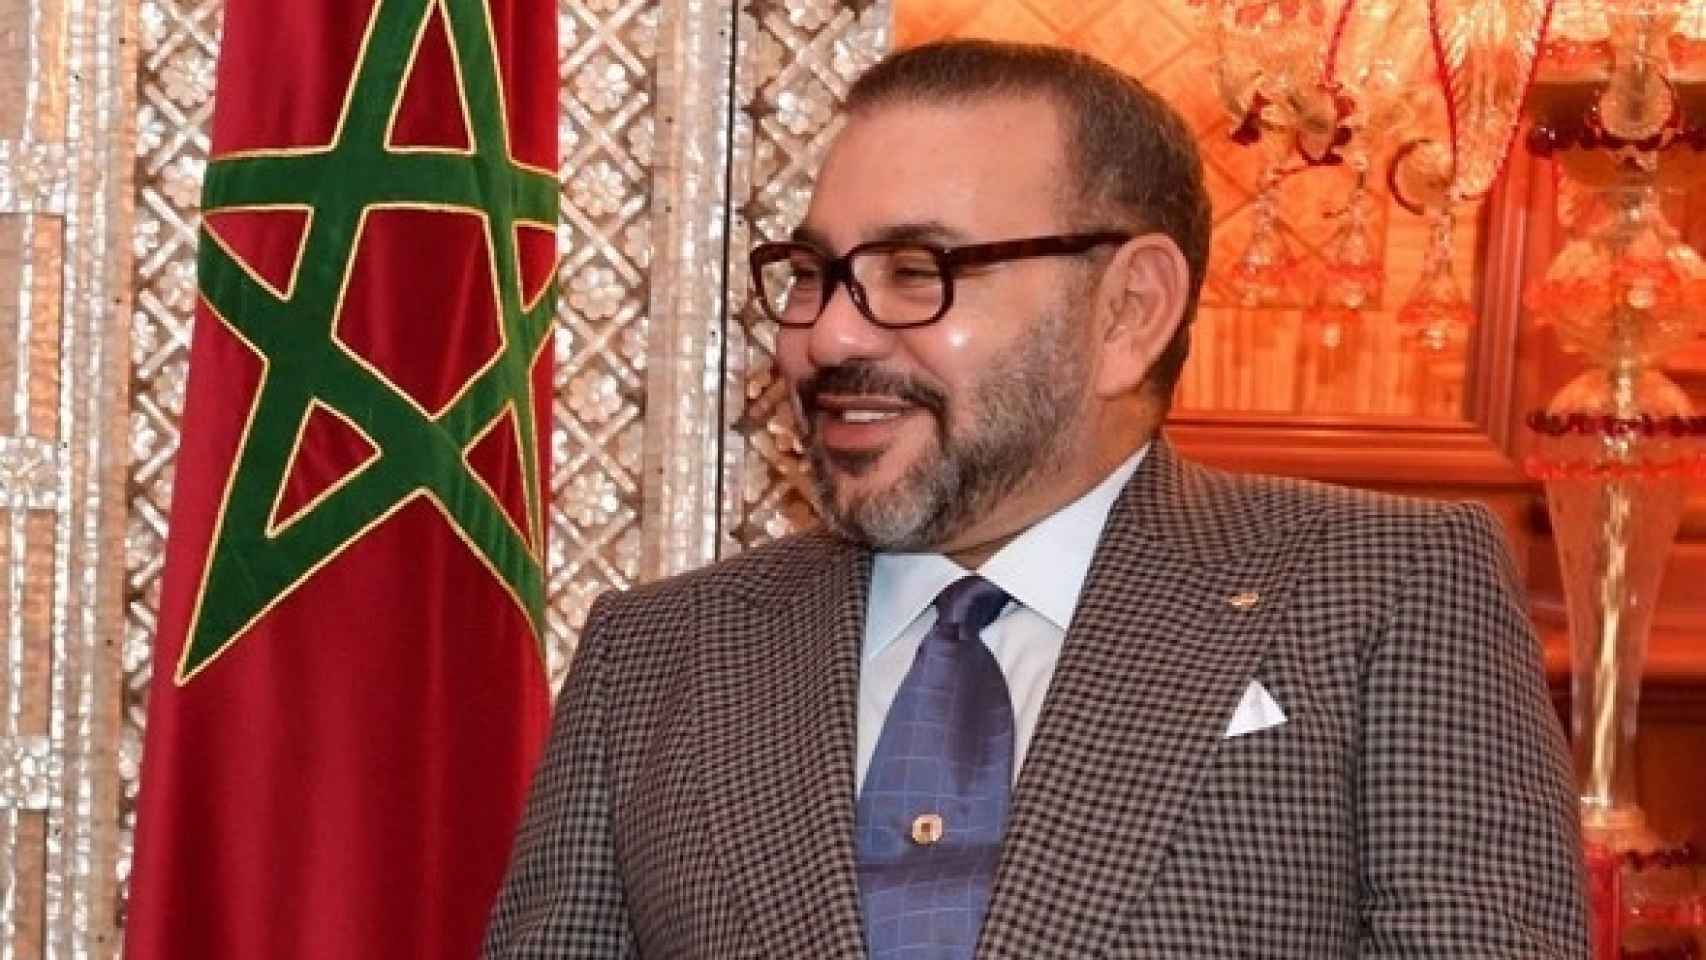 El rey Mohamed VI de Marruecos en Jordania